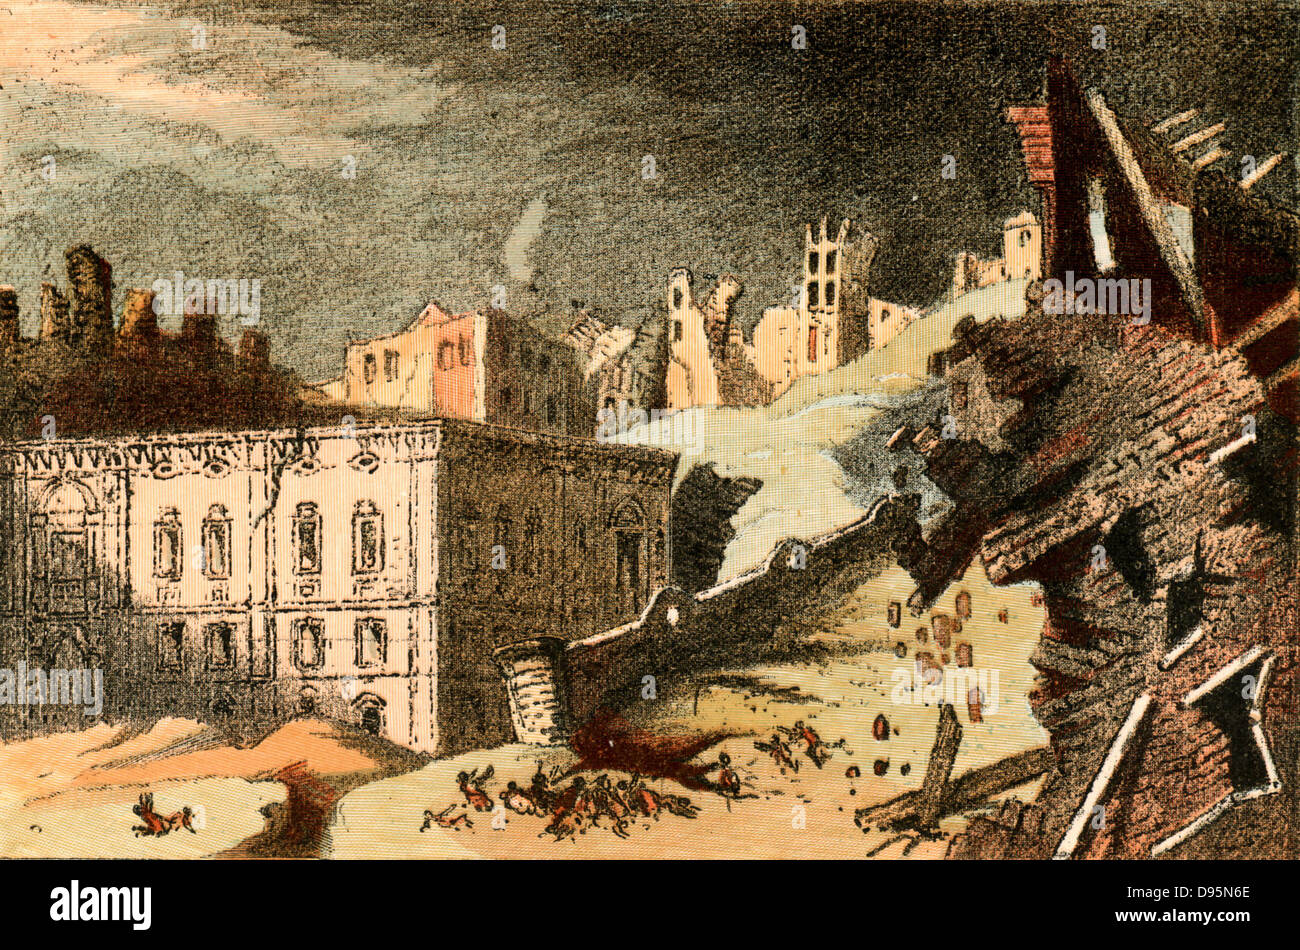 Le grand tremblement de terre de Lisbonne de l novembre 1755 qui a détruit une grande partie de la ville et tué des milliers de ses habitants. Le séisme a été suivi d'un raz-de-marée, et d'autres endommagés par l'incendie qui a éclaté. Répliques sismiques ont estimé plusieurs semaines après l'événement principal. Cet événement historique est décrit dans le roman philosophique "Candide" de Voltaire (1759). Banque D'Images